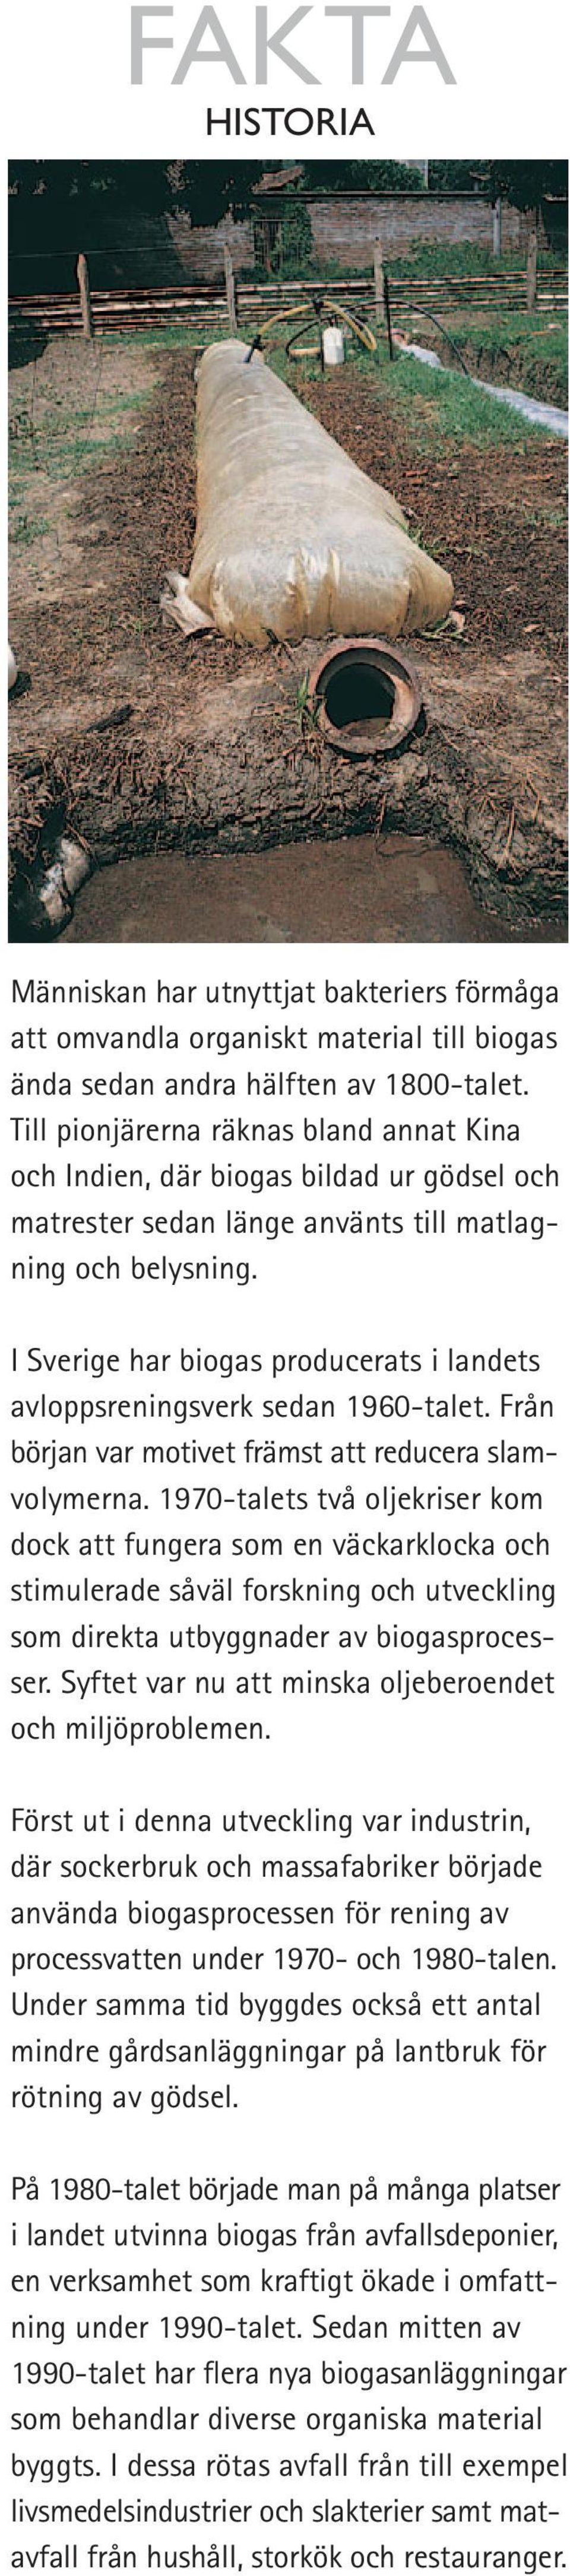 I Sverige har biogas producerats i landets avloppsreningsverk sedan 1960-talet. Från början var motivet främst att reducera slamvolymerna.